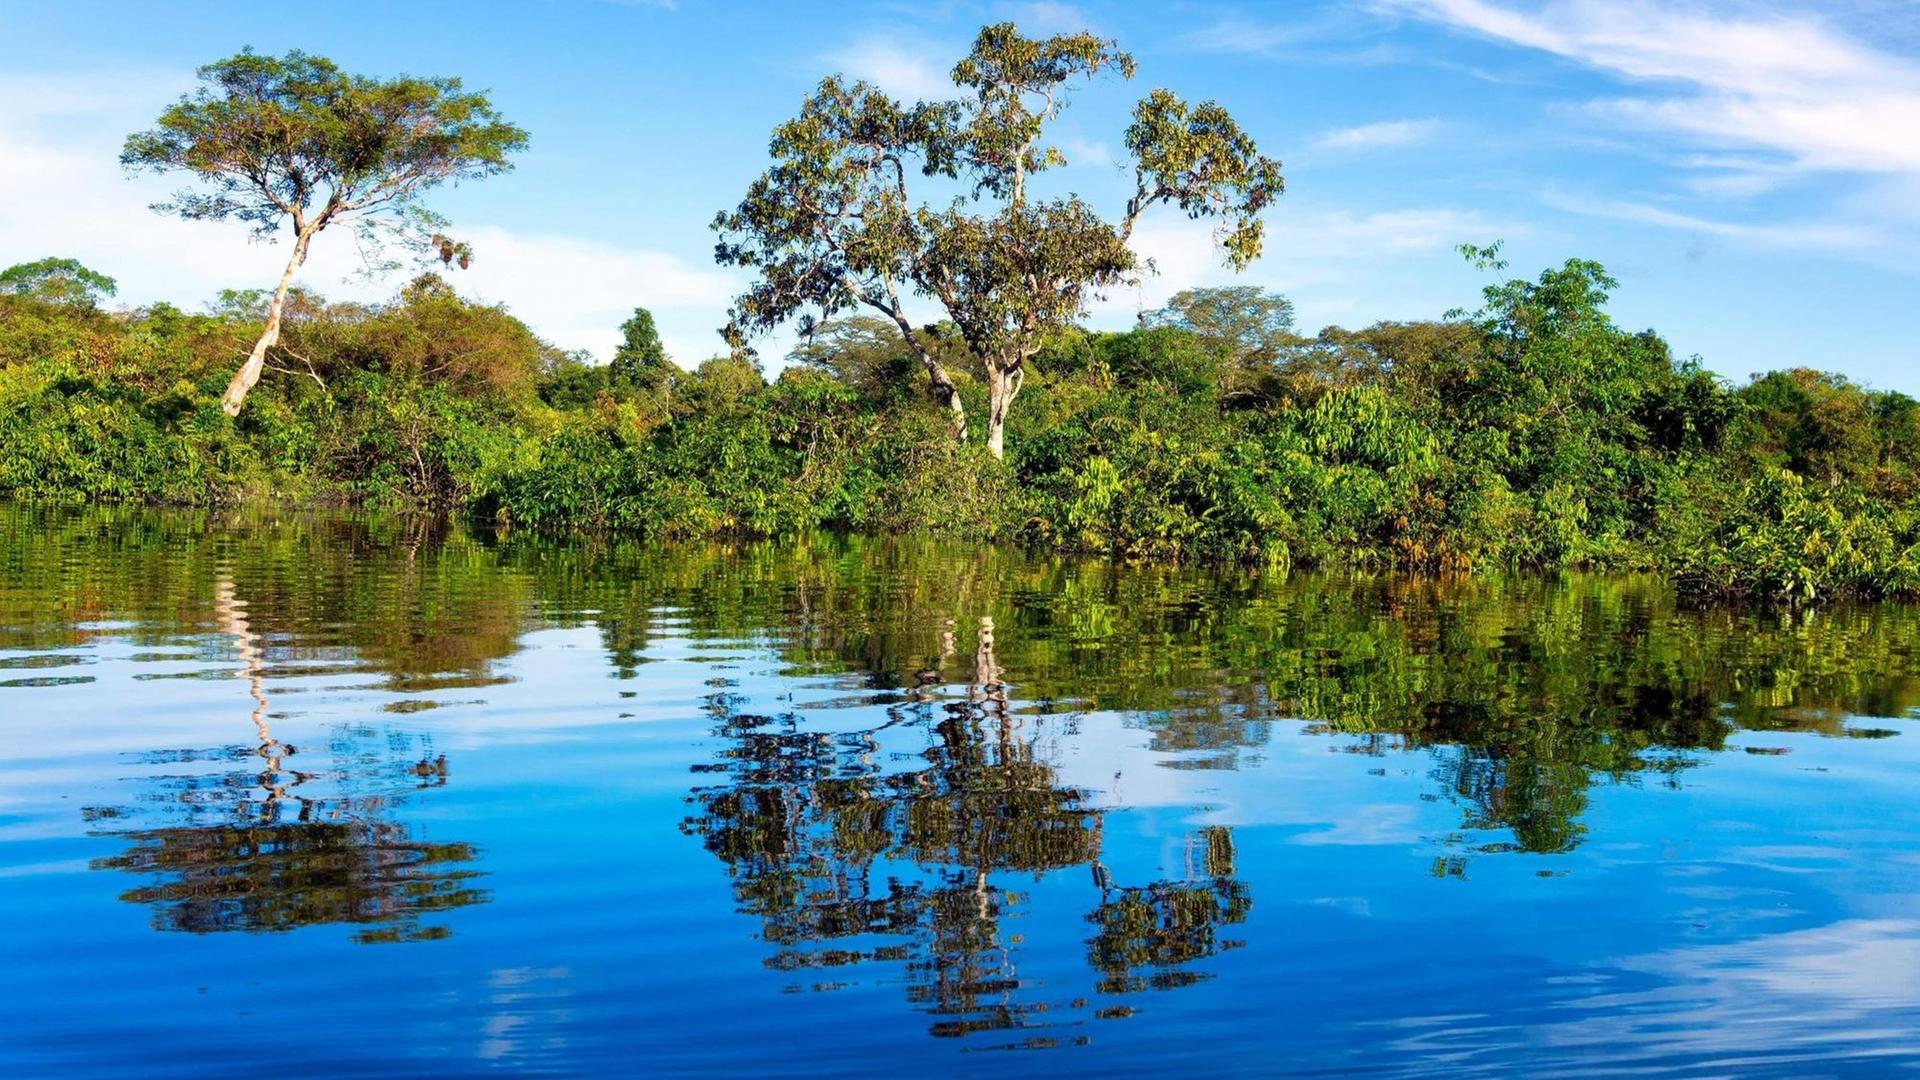 Der Regenwald spiegelt sich im Wasser im Amazonas-Gebiet